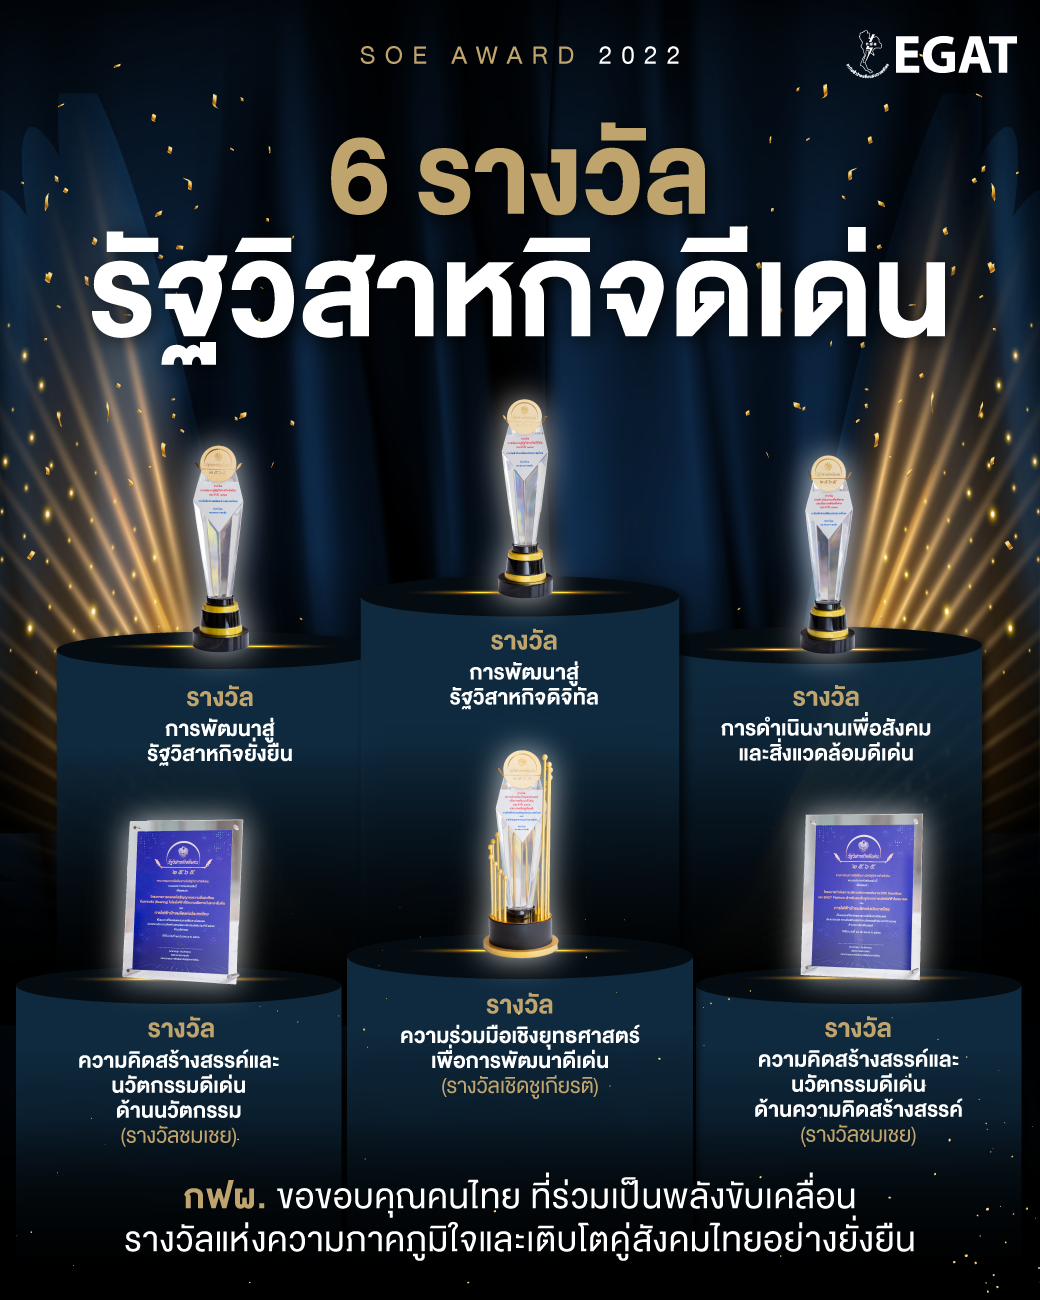 泰国国家电力局荣获佛历2565年度优秀国有企业奖项的六项大奖，作为优秀的国有企业将坚定不移的通过科技创新推动国家发展。